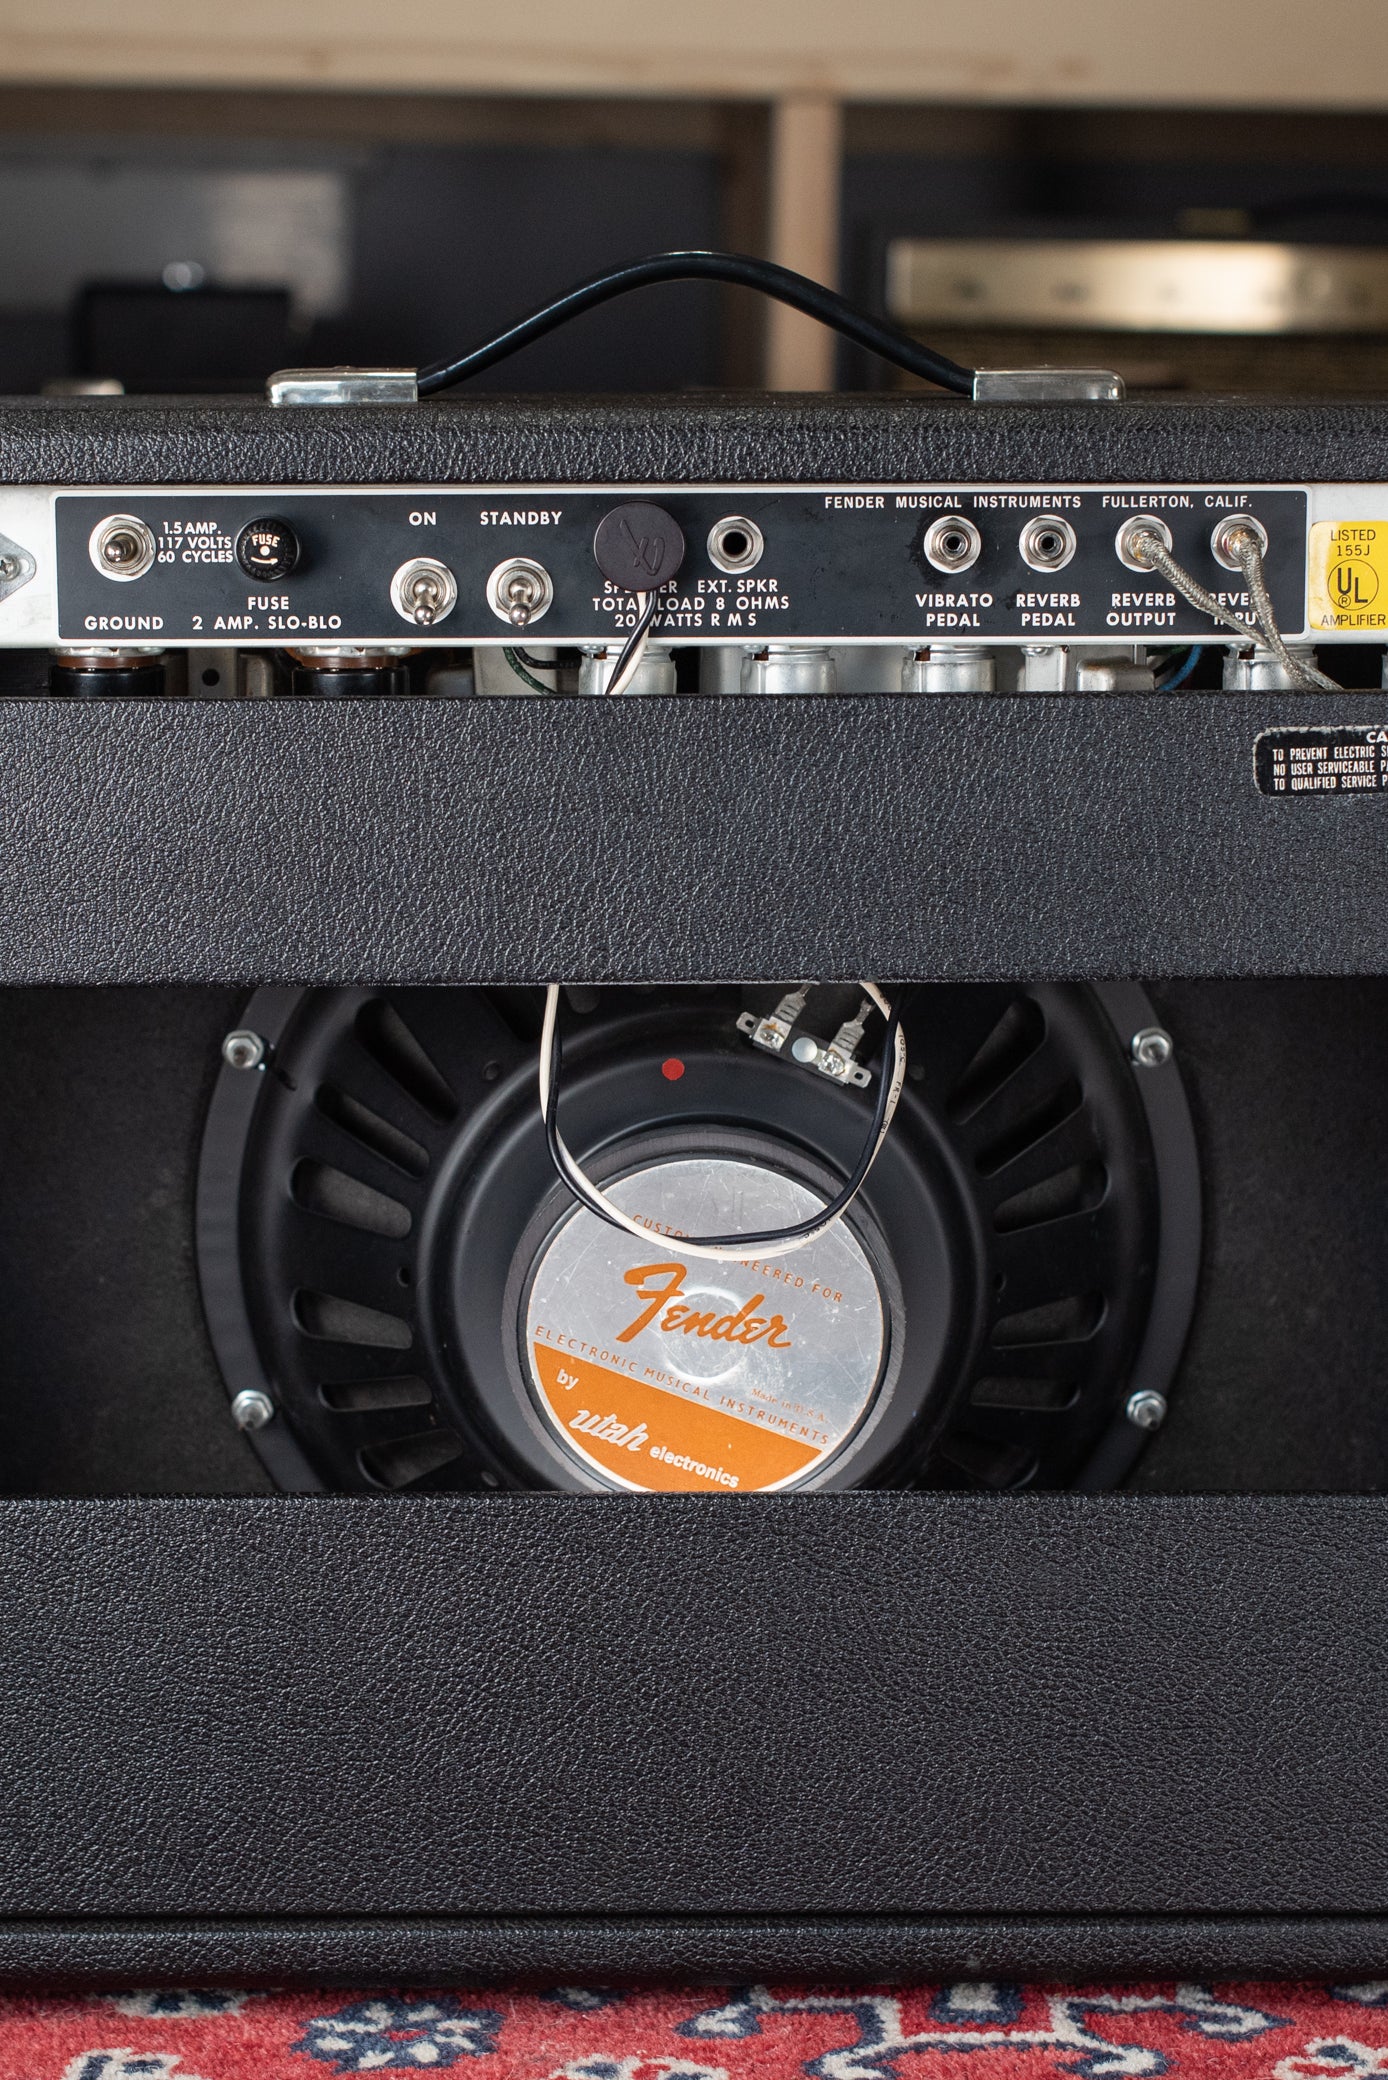 12" Utah speaker, 1975 Fender Deluxe Reverb